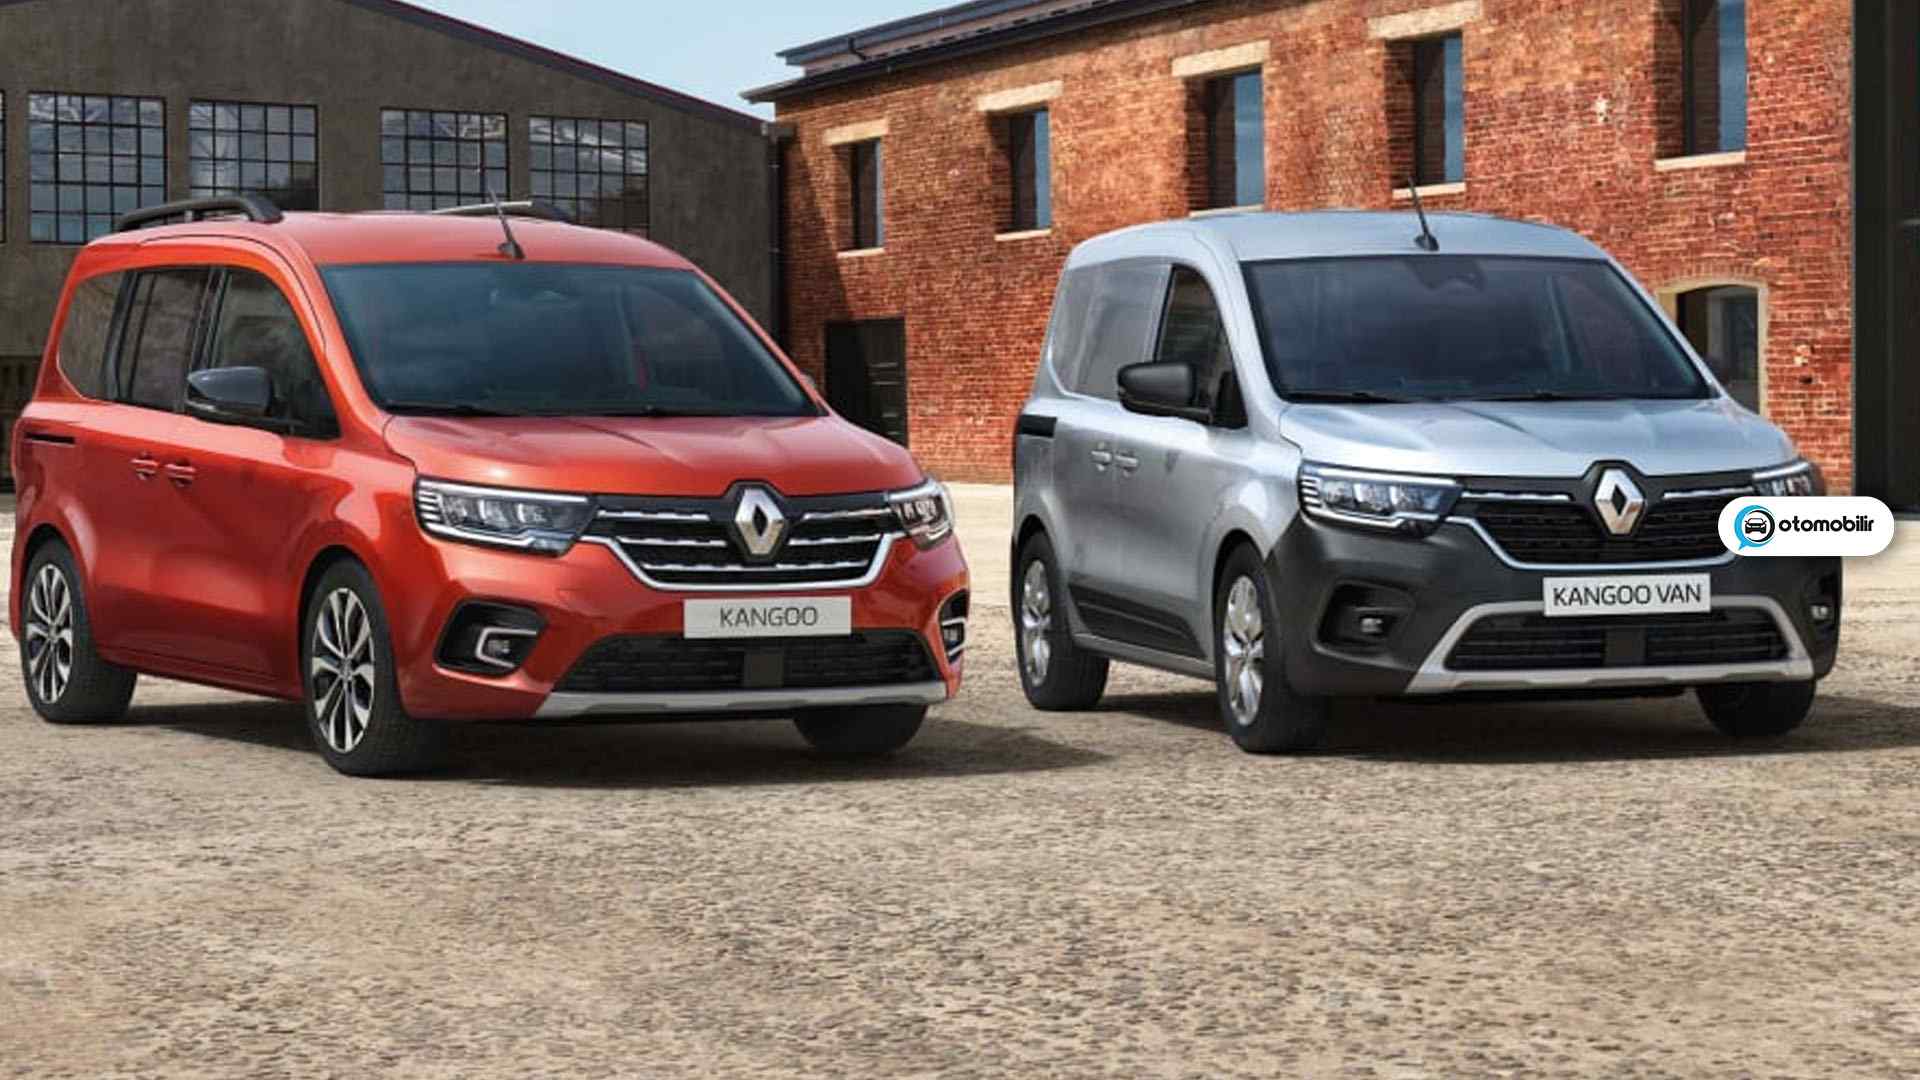 Renault yeni hafif ticari araç modellerini tanıttı